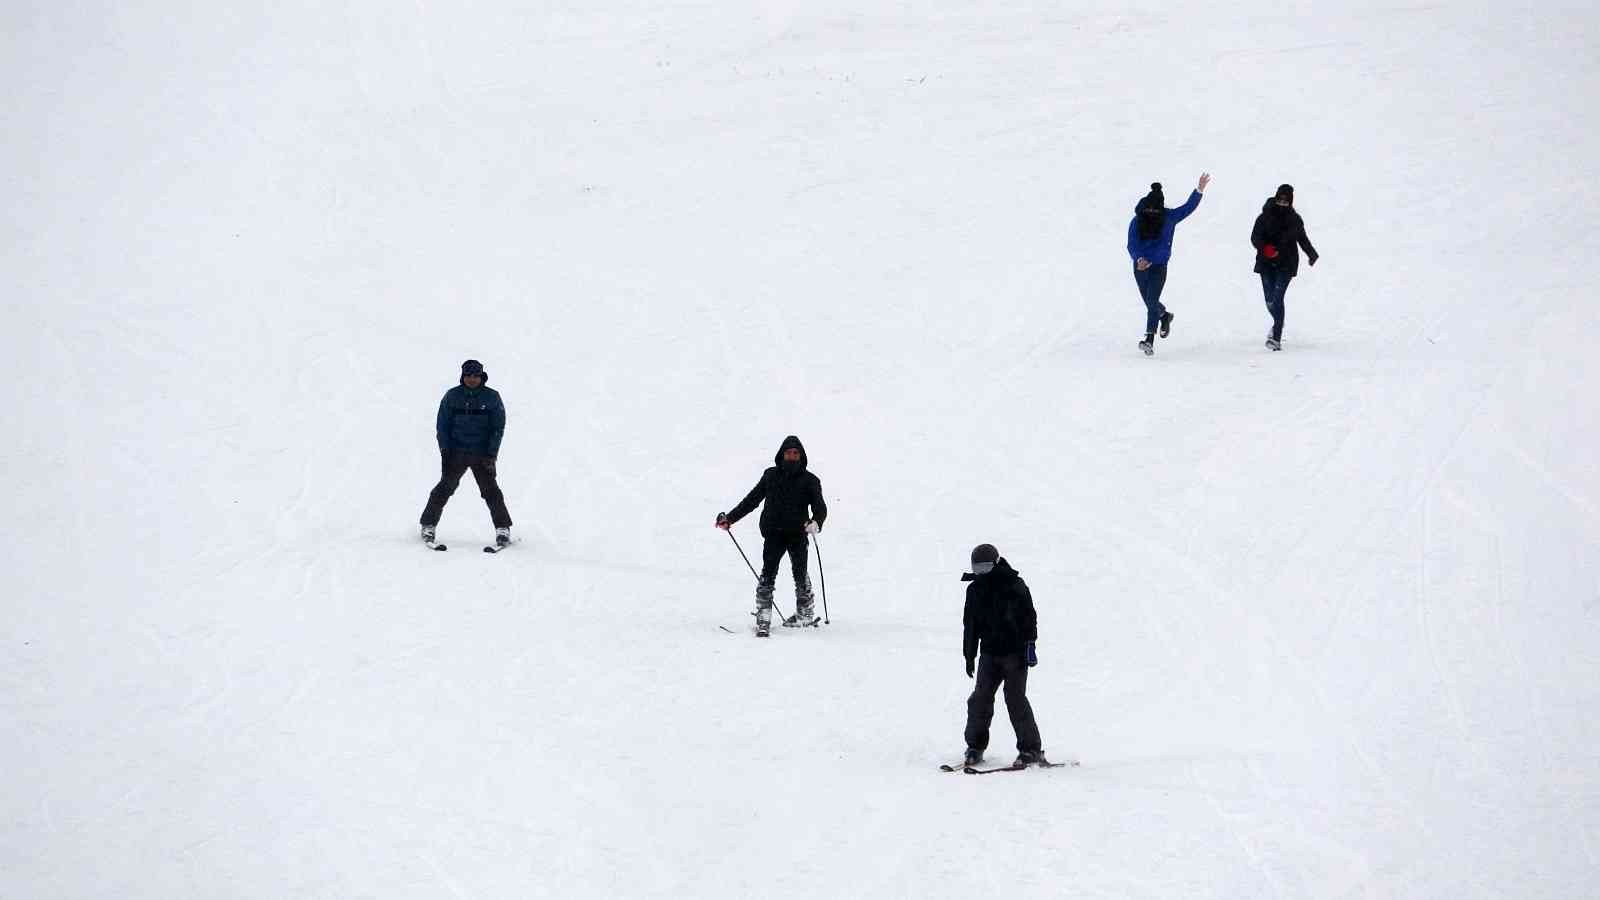 Yalnızçam’da kayak sezonu açıldı #ardahan